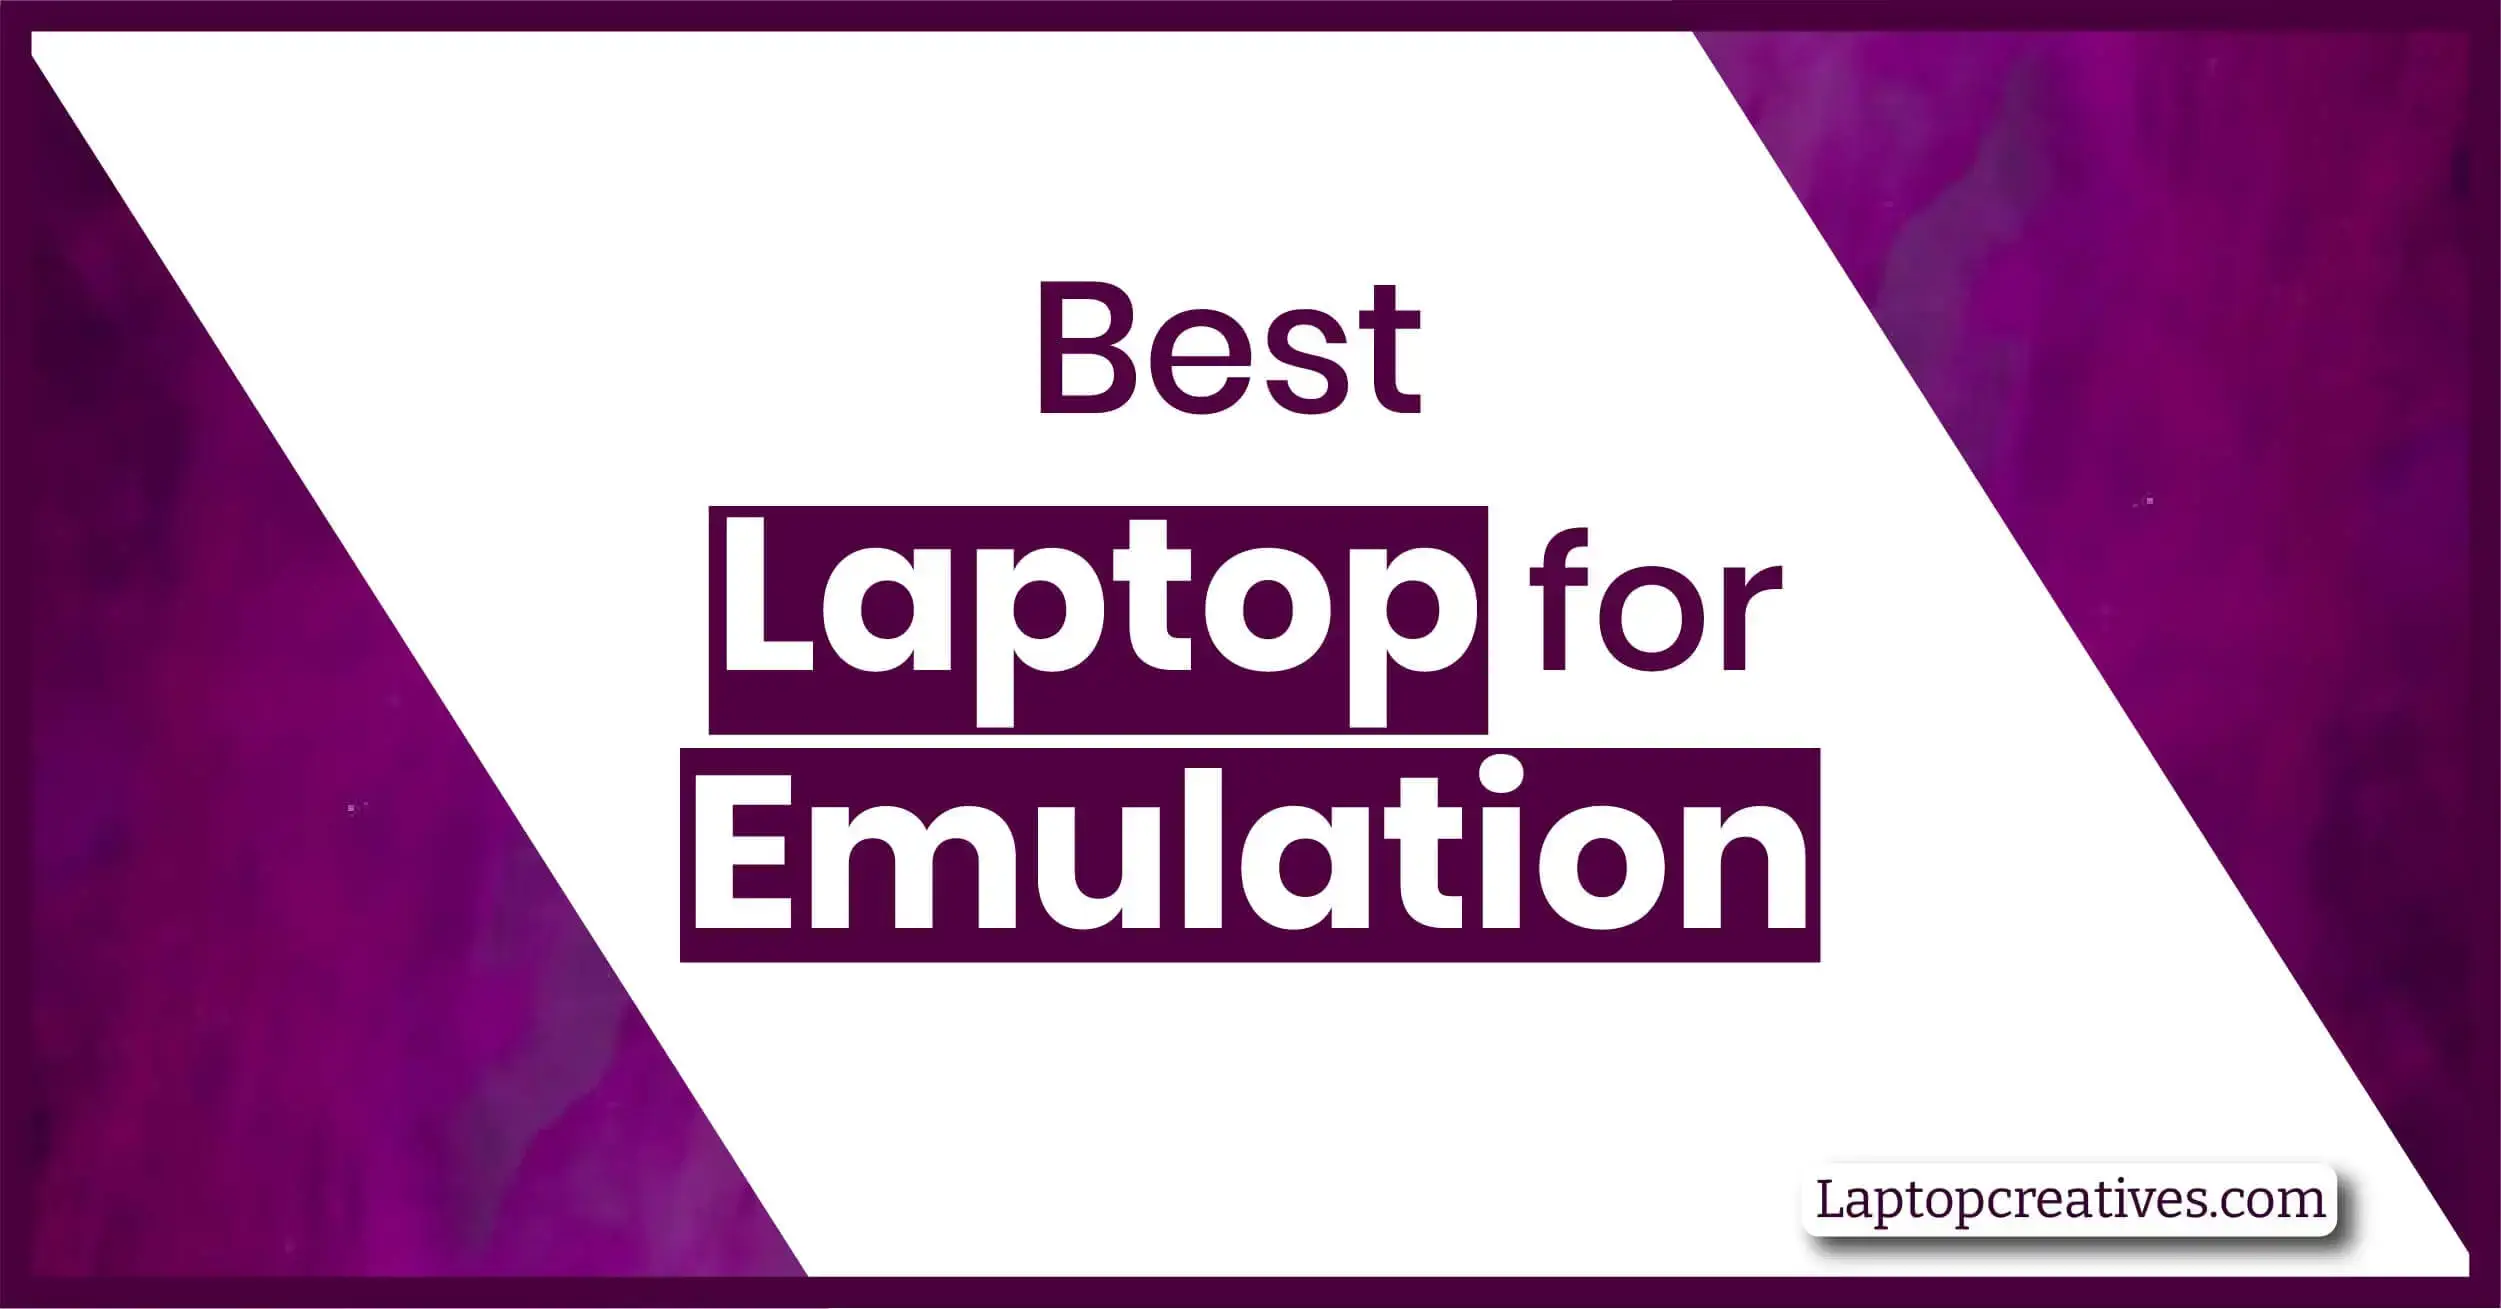 Best Laptop for Emulation